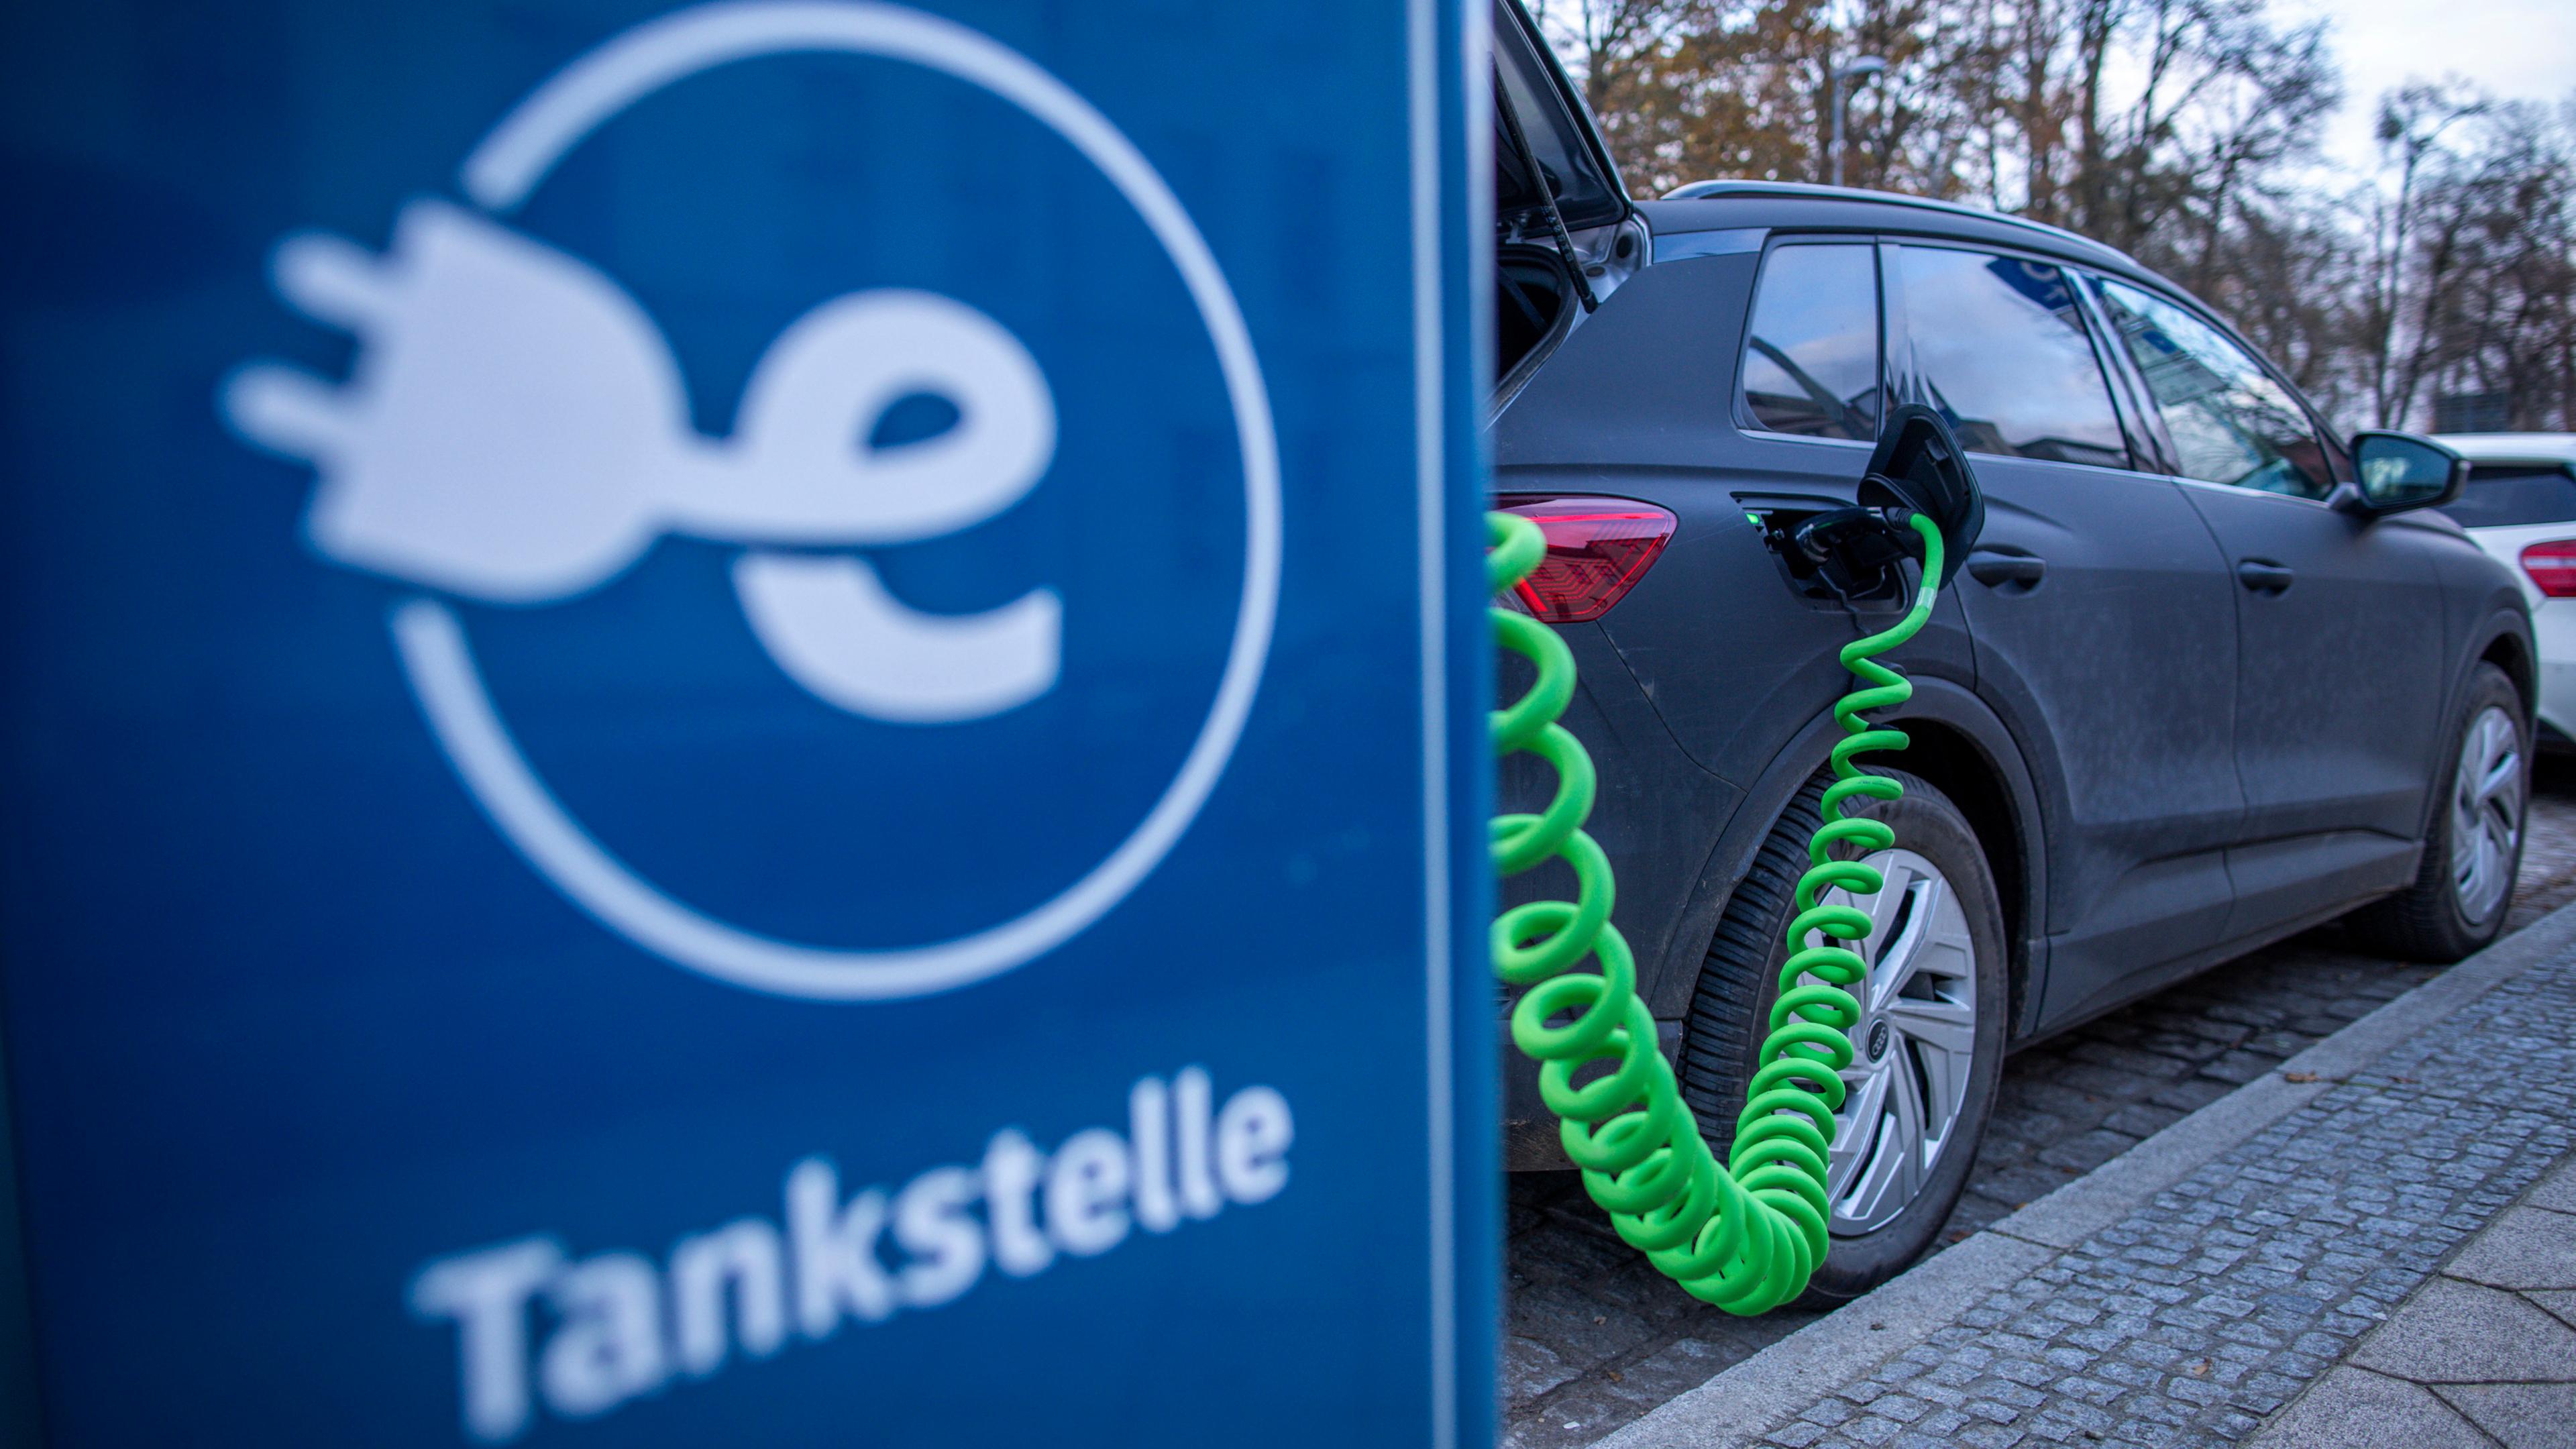 Mecklenburg-Vorpommern, Schwerin: An der Ladesäule eines regionalen Stromanbieters wird ein Elektroauto mit Strom aufgeladen.